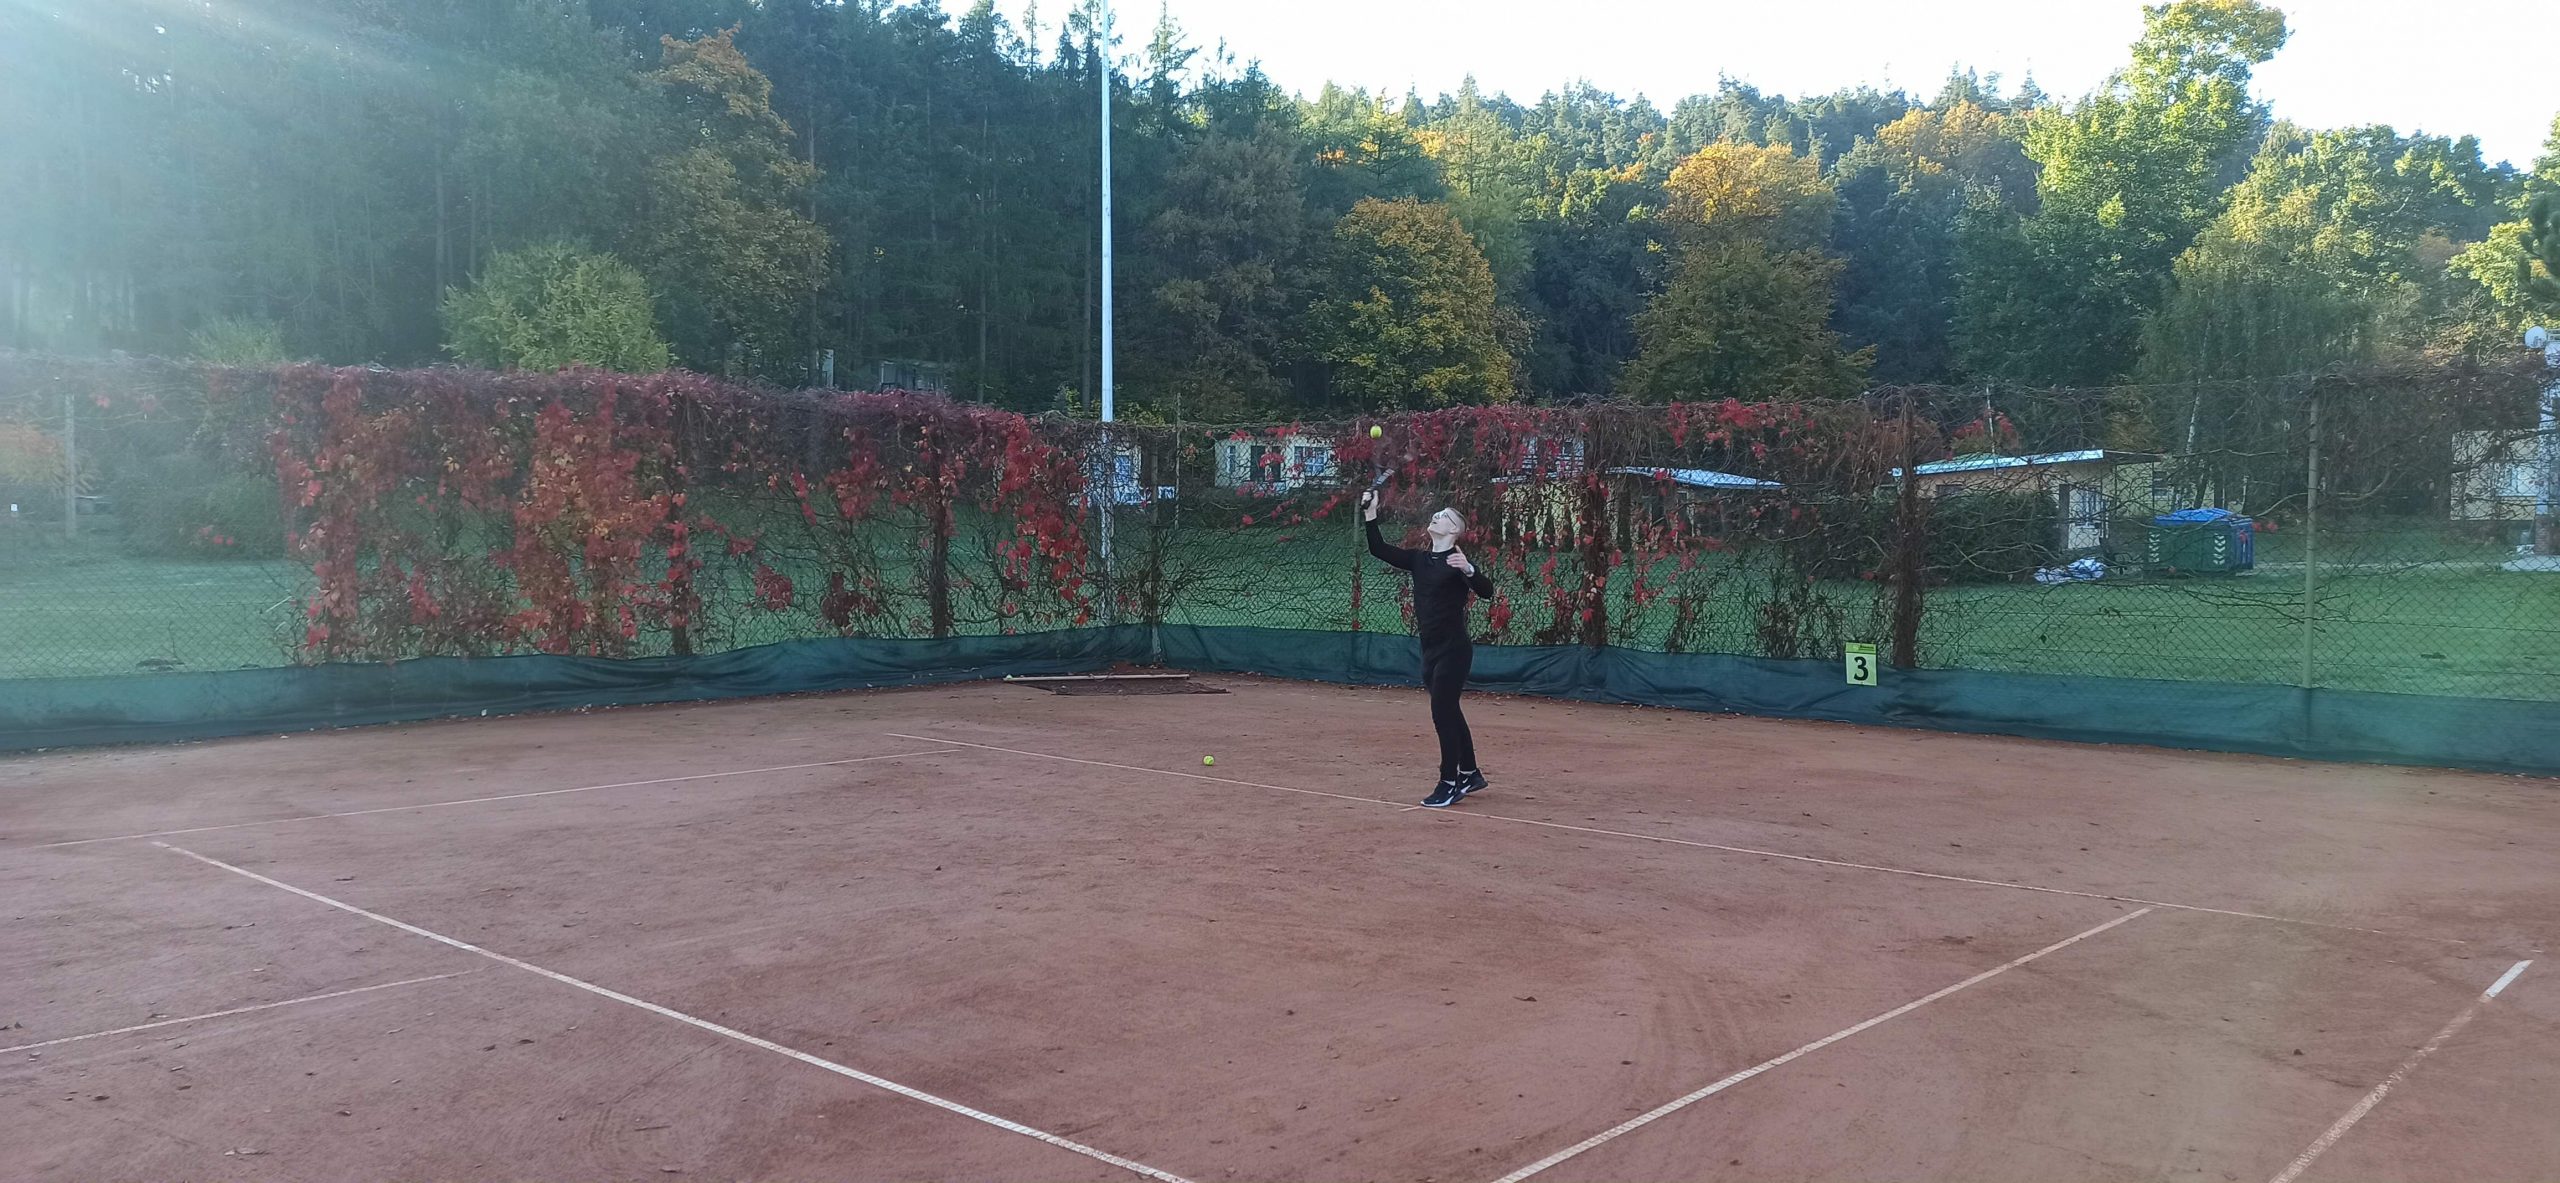 Wychowanek przygotowuje się do odbicia piłki tenisowej